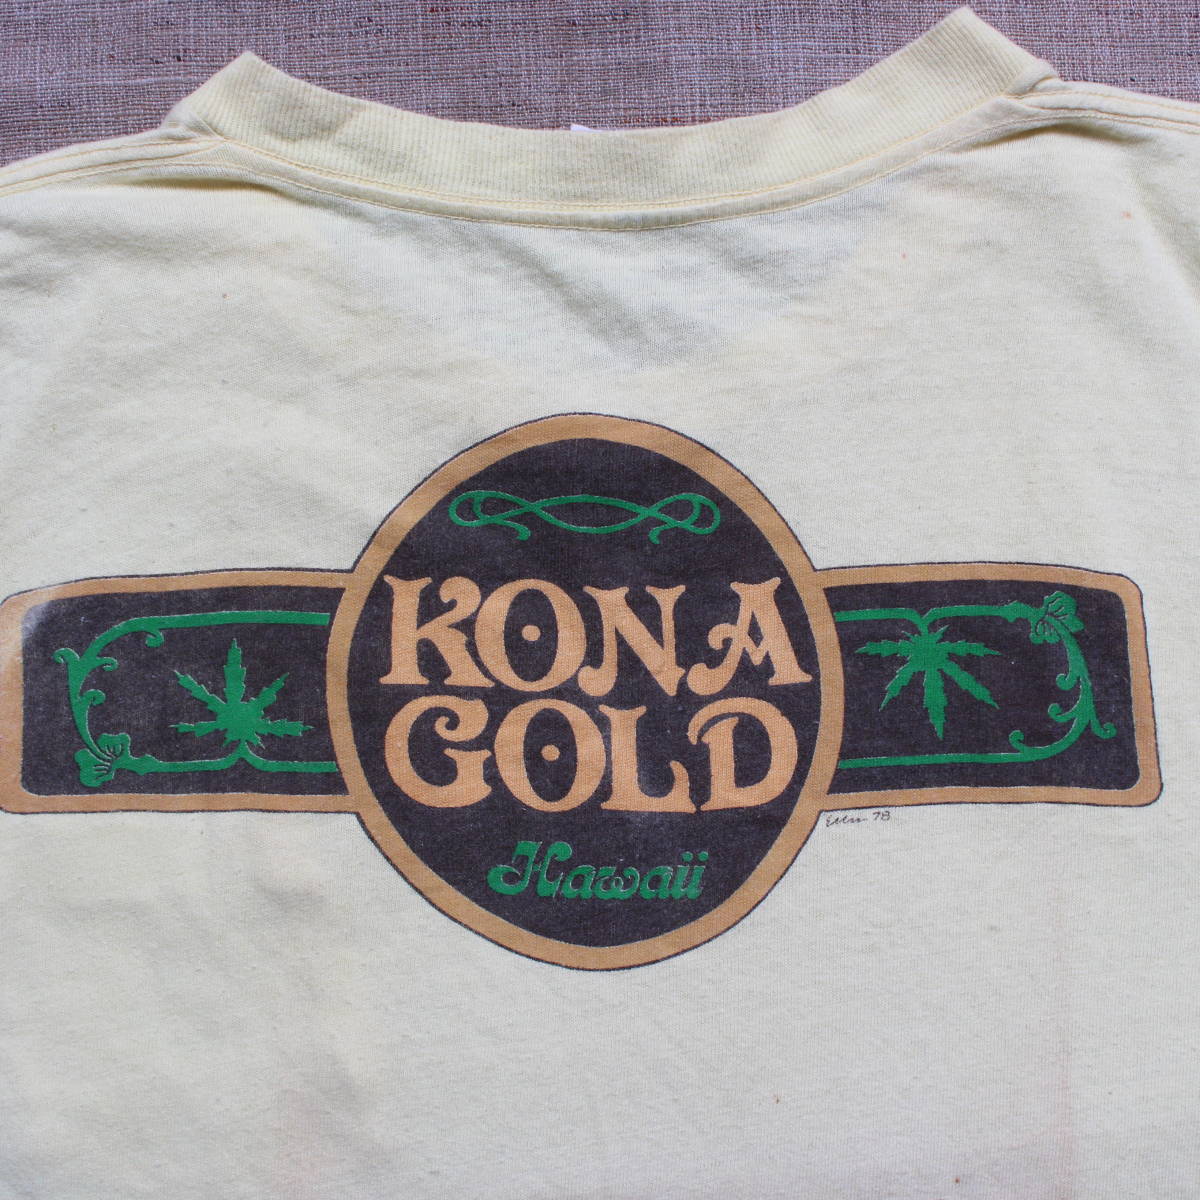 1978年製 レア ハワイHawaiiヴィンテージ Tシャツ KONA GOLD アメリカUSA マリファナ 大麻 ガンジャ ジョイント コーヒーショップ 70s 古着